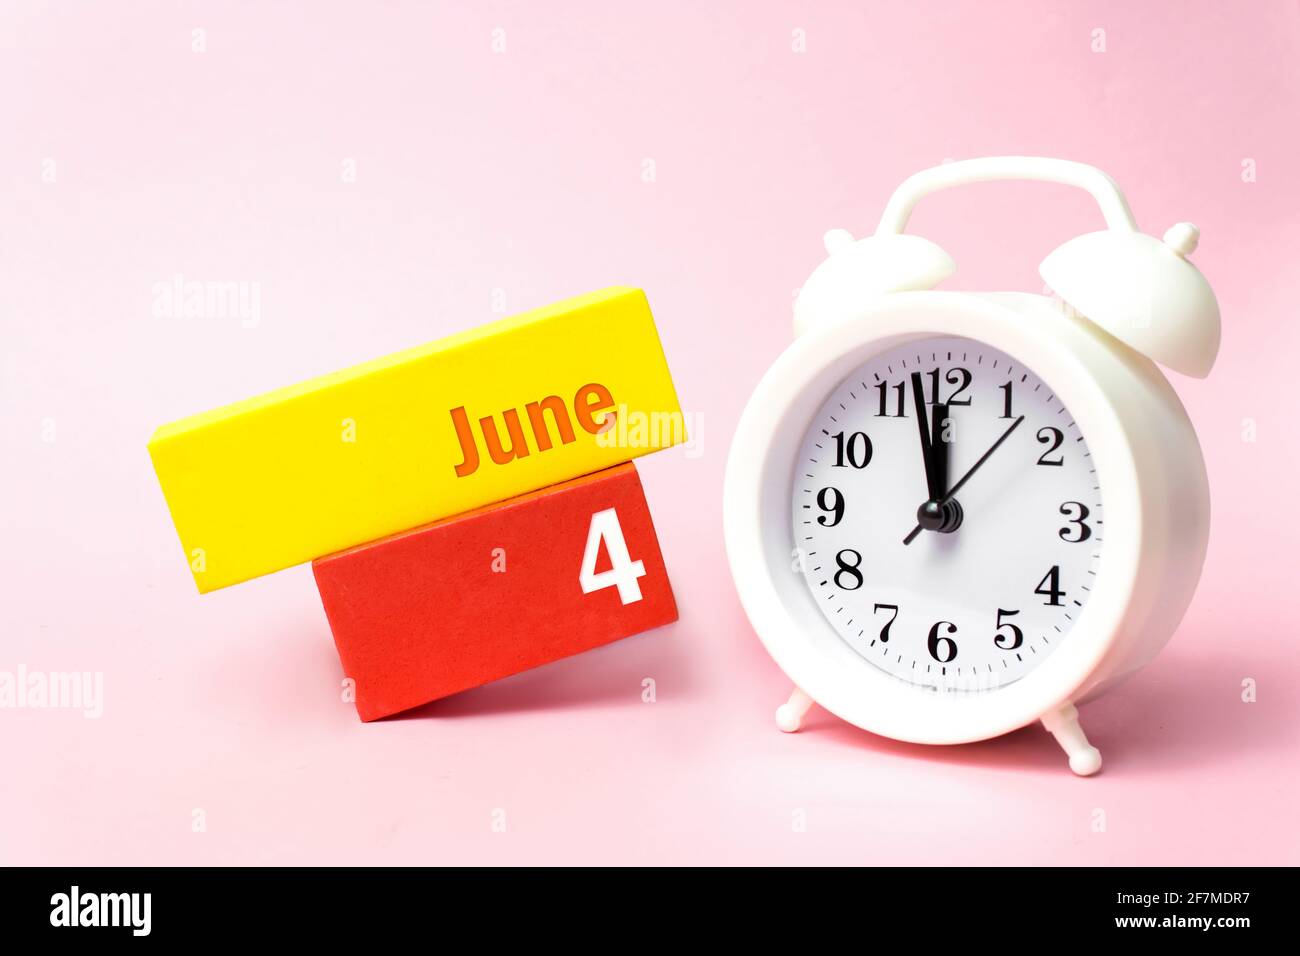 4 juin. Jour 4 du mois, date du calendrier. Réveil blanc sur fond rose pastel. Concept mois d'été, jour de l'année Banque D'Images